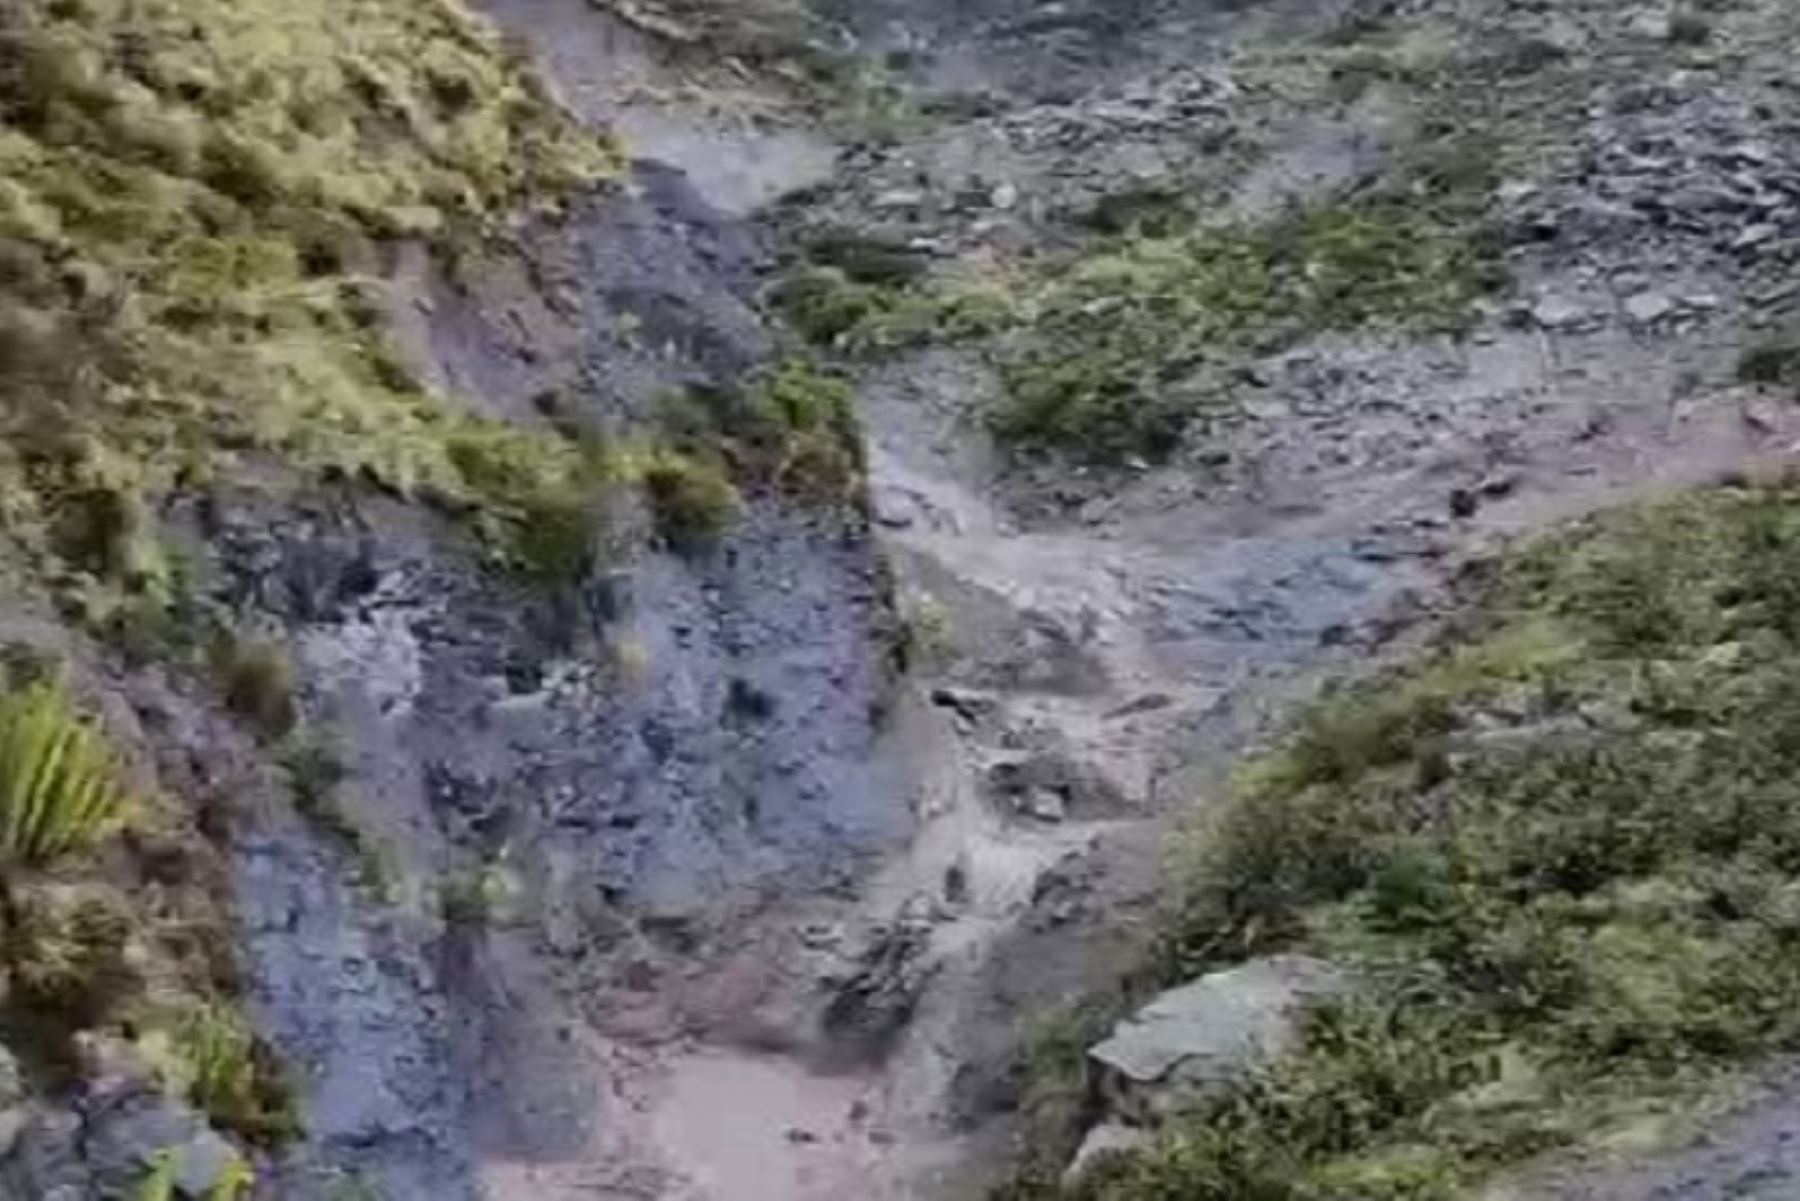 El lahar descendió por el flanco sureste del citado macizo, por la quebrada Volcanmayo-río Ubinas, a una distancia aproximada de dos kilómetros del pueblo de Ubinas y contiguo al anexo de Tonohaya.